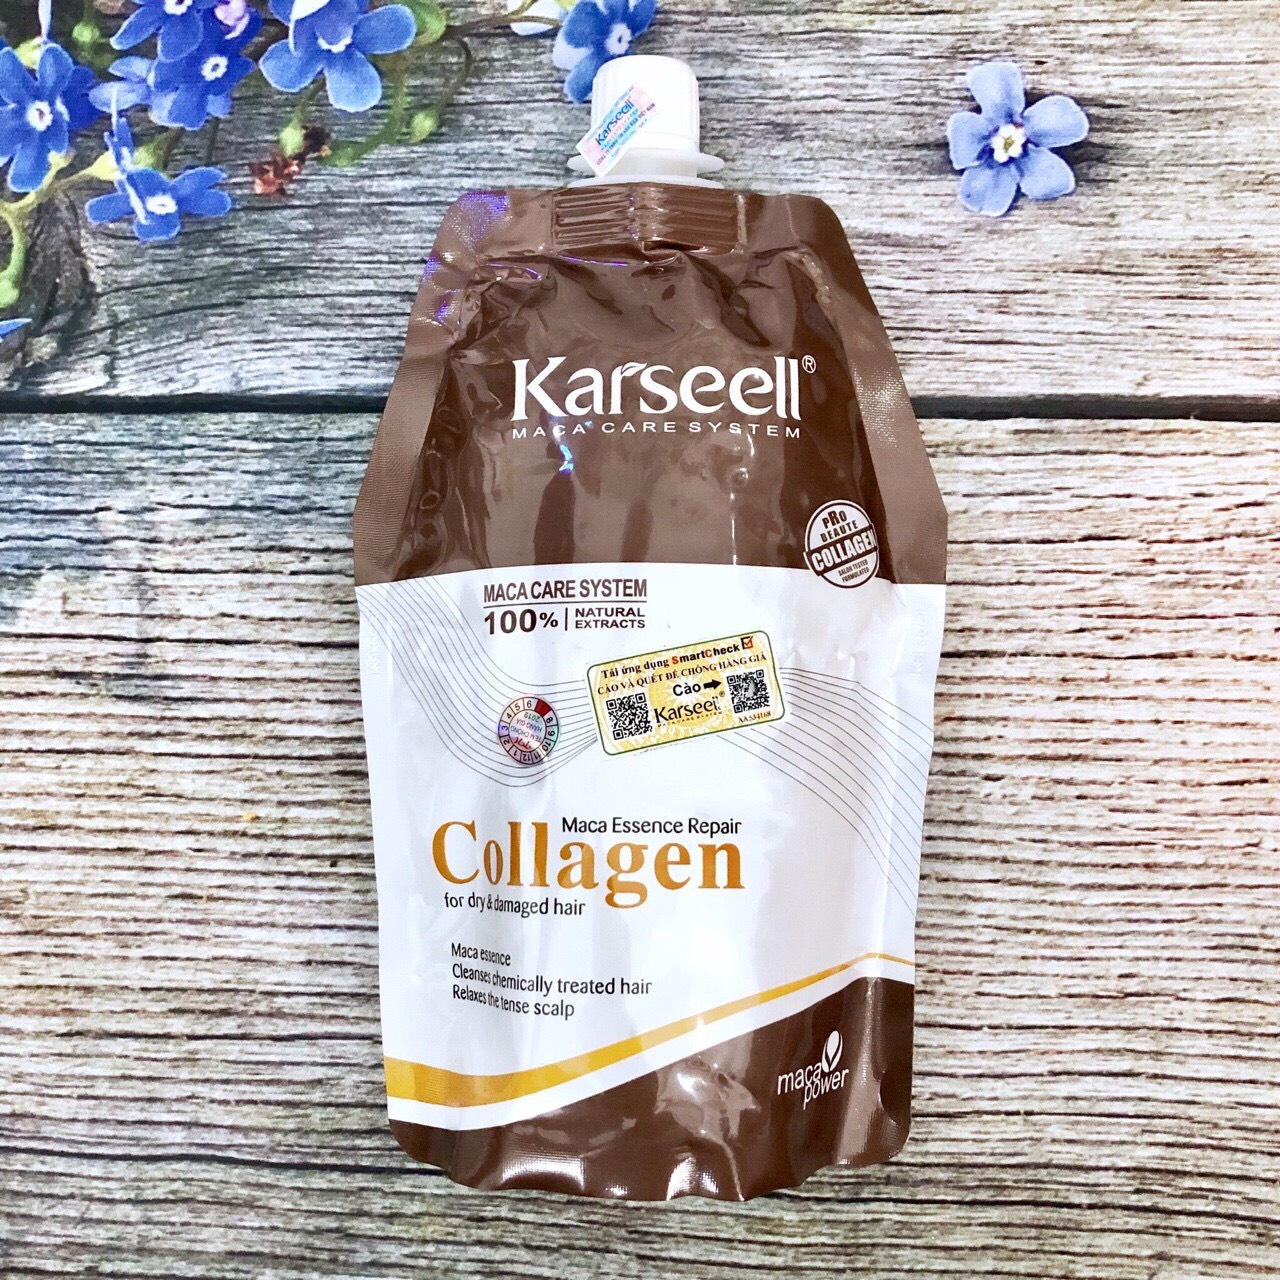 Hấp Dầu Karseell | Dầu Hấp Tóc Collagen 500ml Chính Hãng Giá Tốt